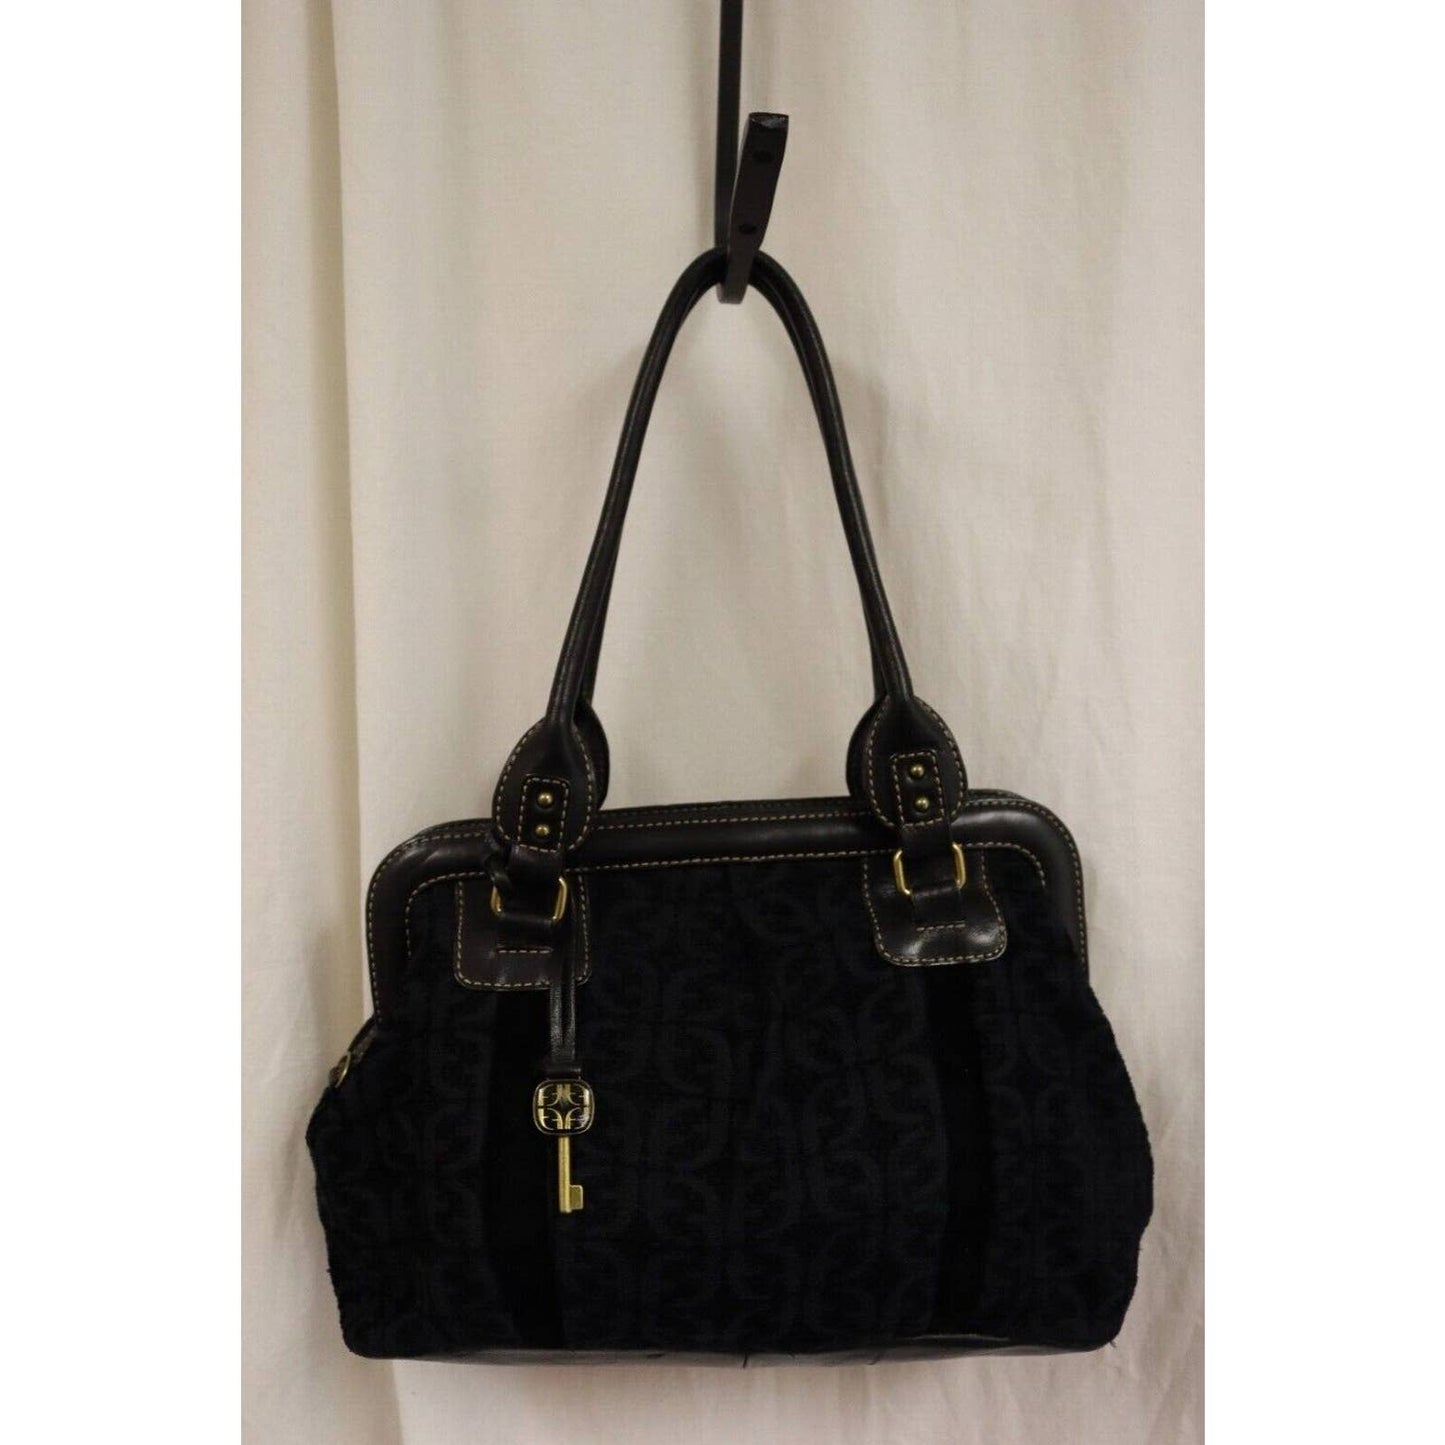 Vintage Fossil Fabric and Leather Black Shoulder Bag Medium Size Handbag